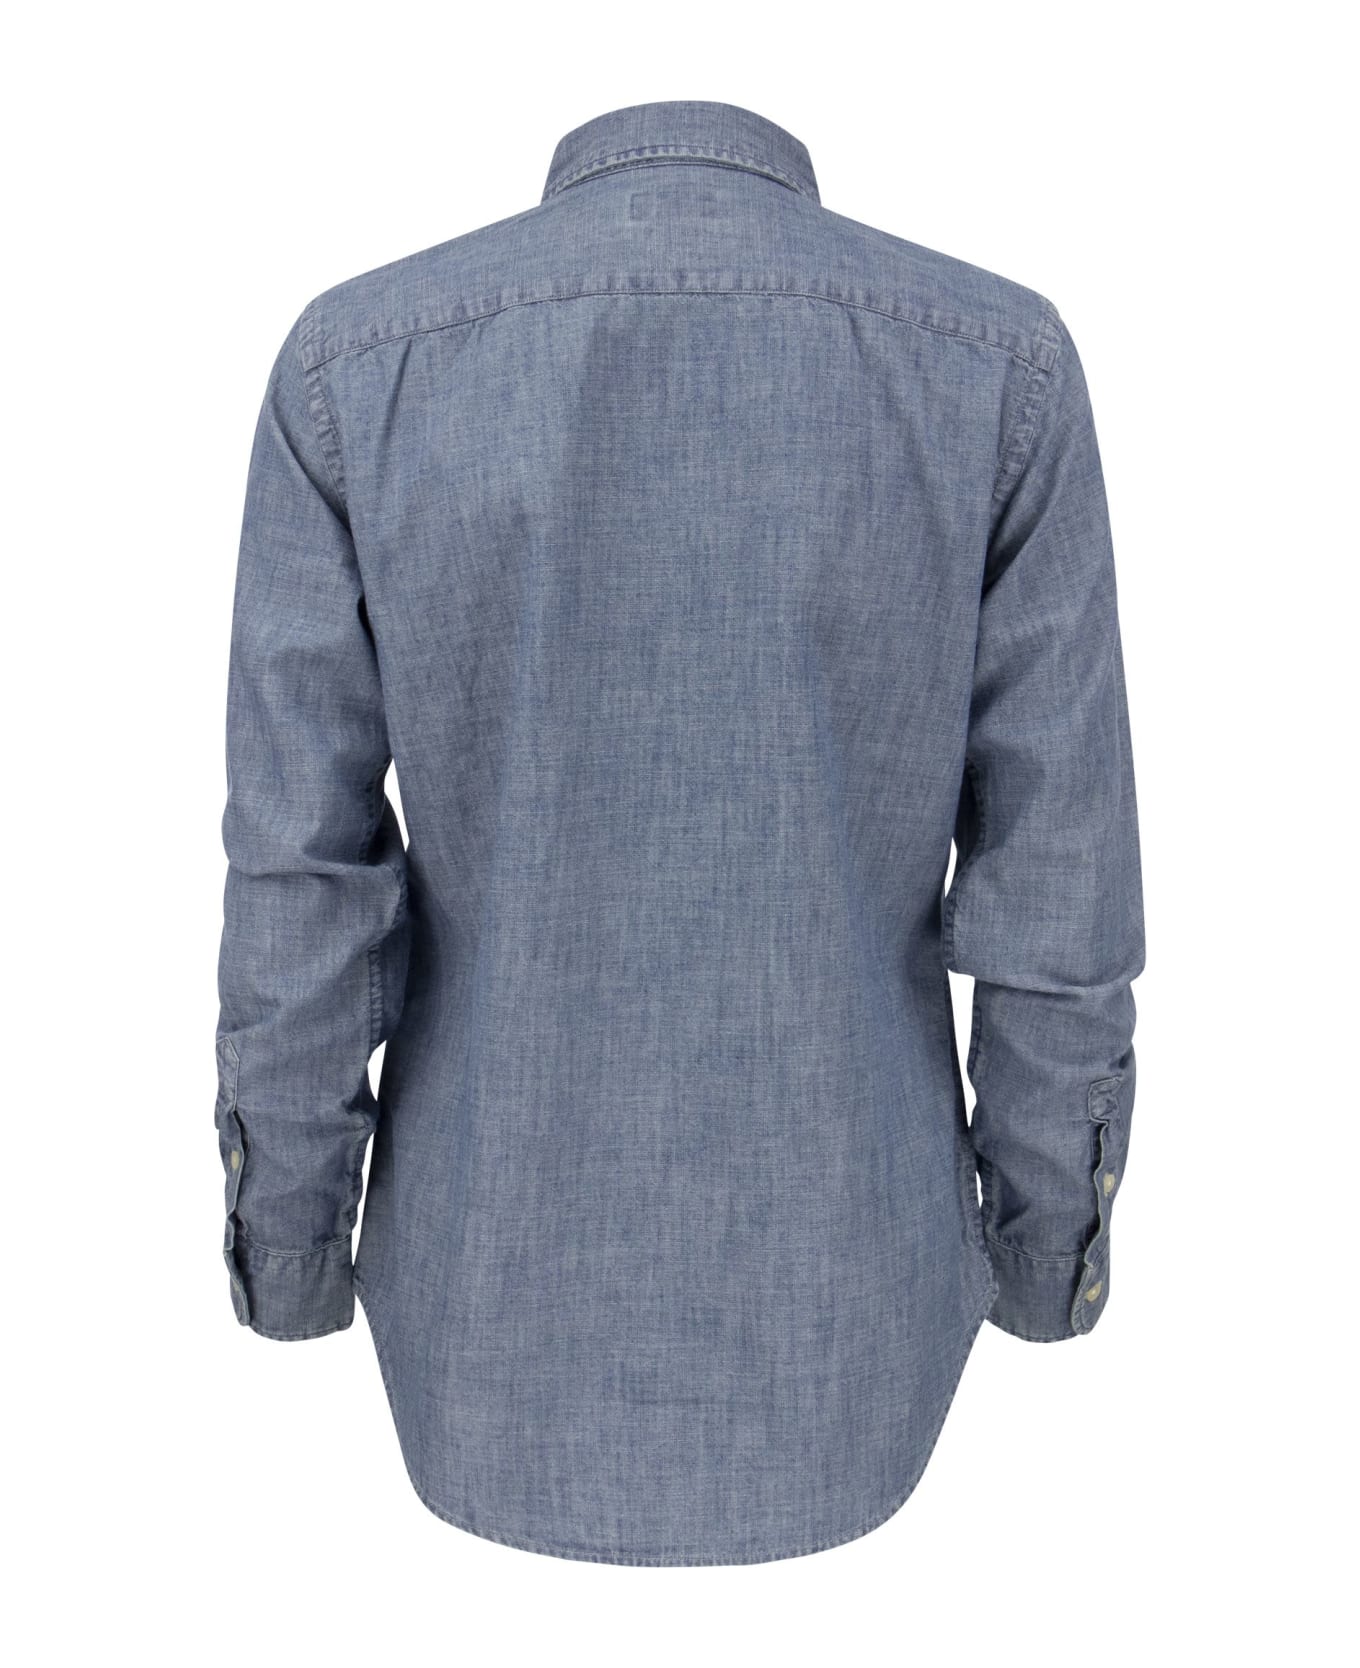 Ralph Lauren Shirt In Indigo Cotton Chambray - Light Blue